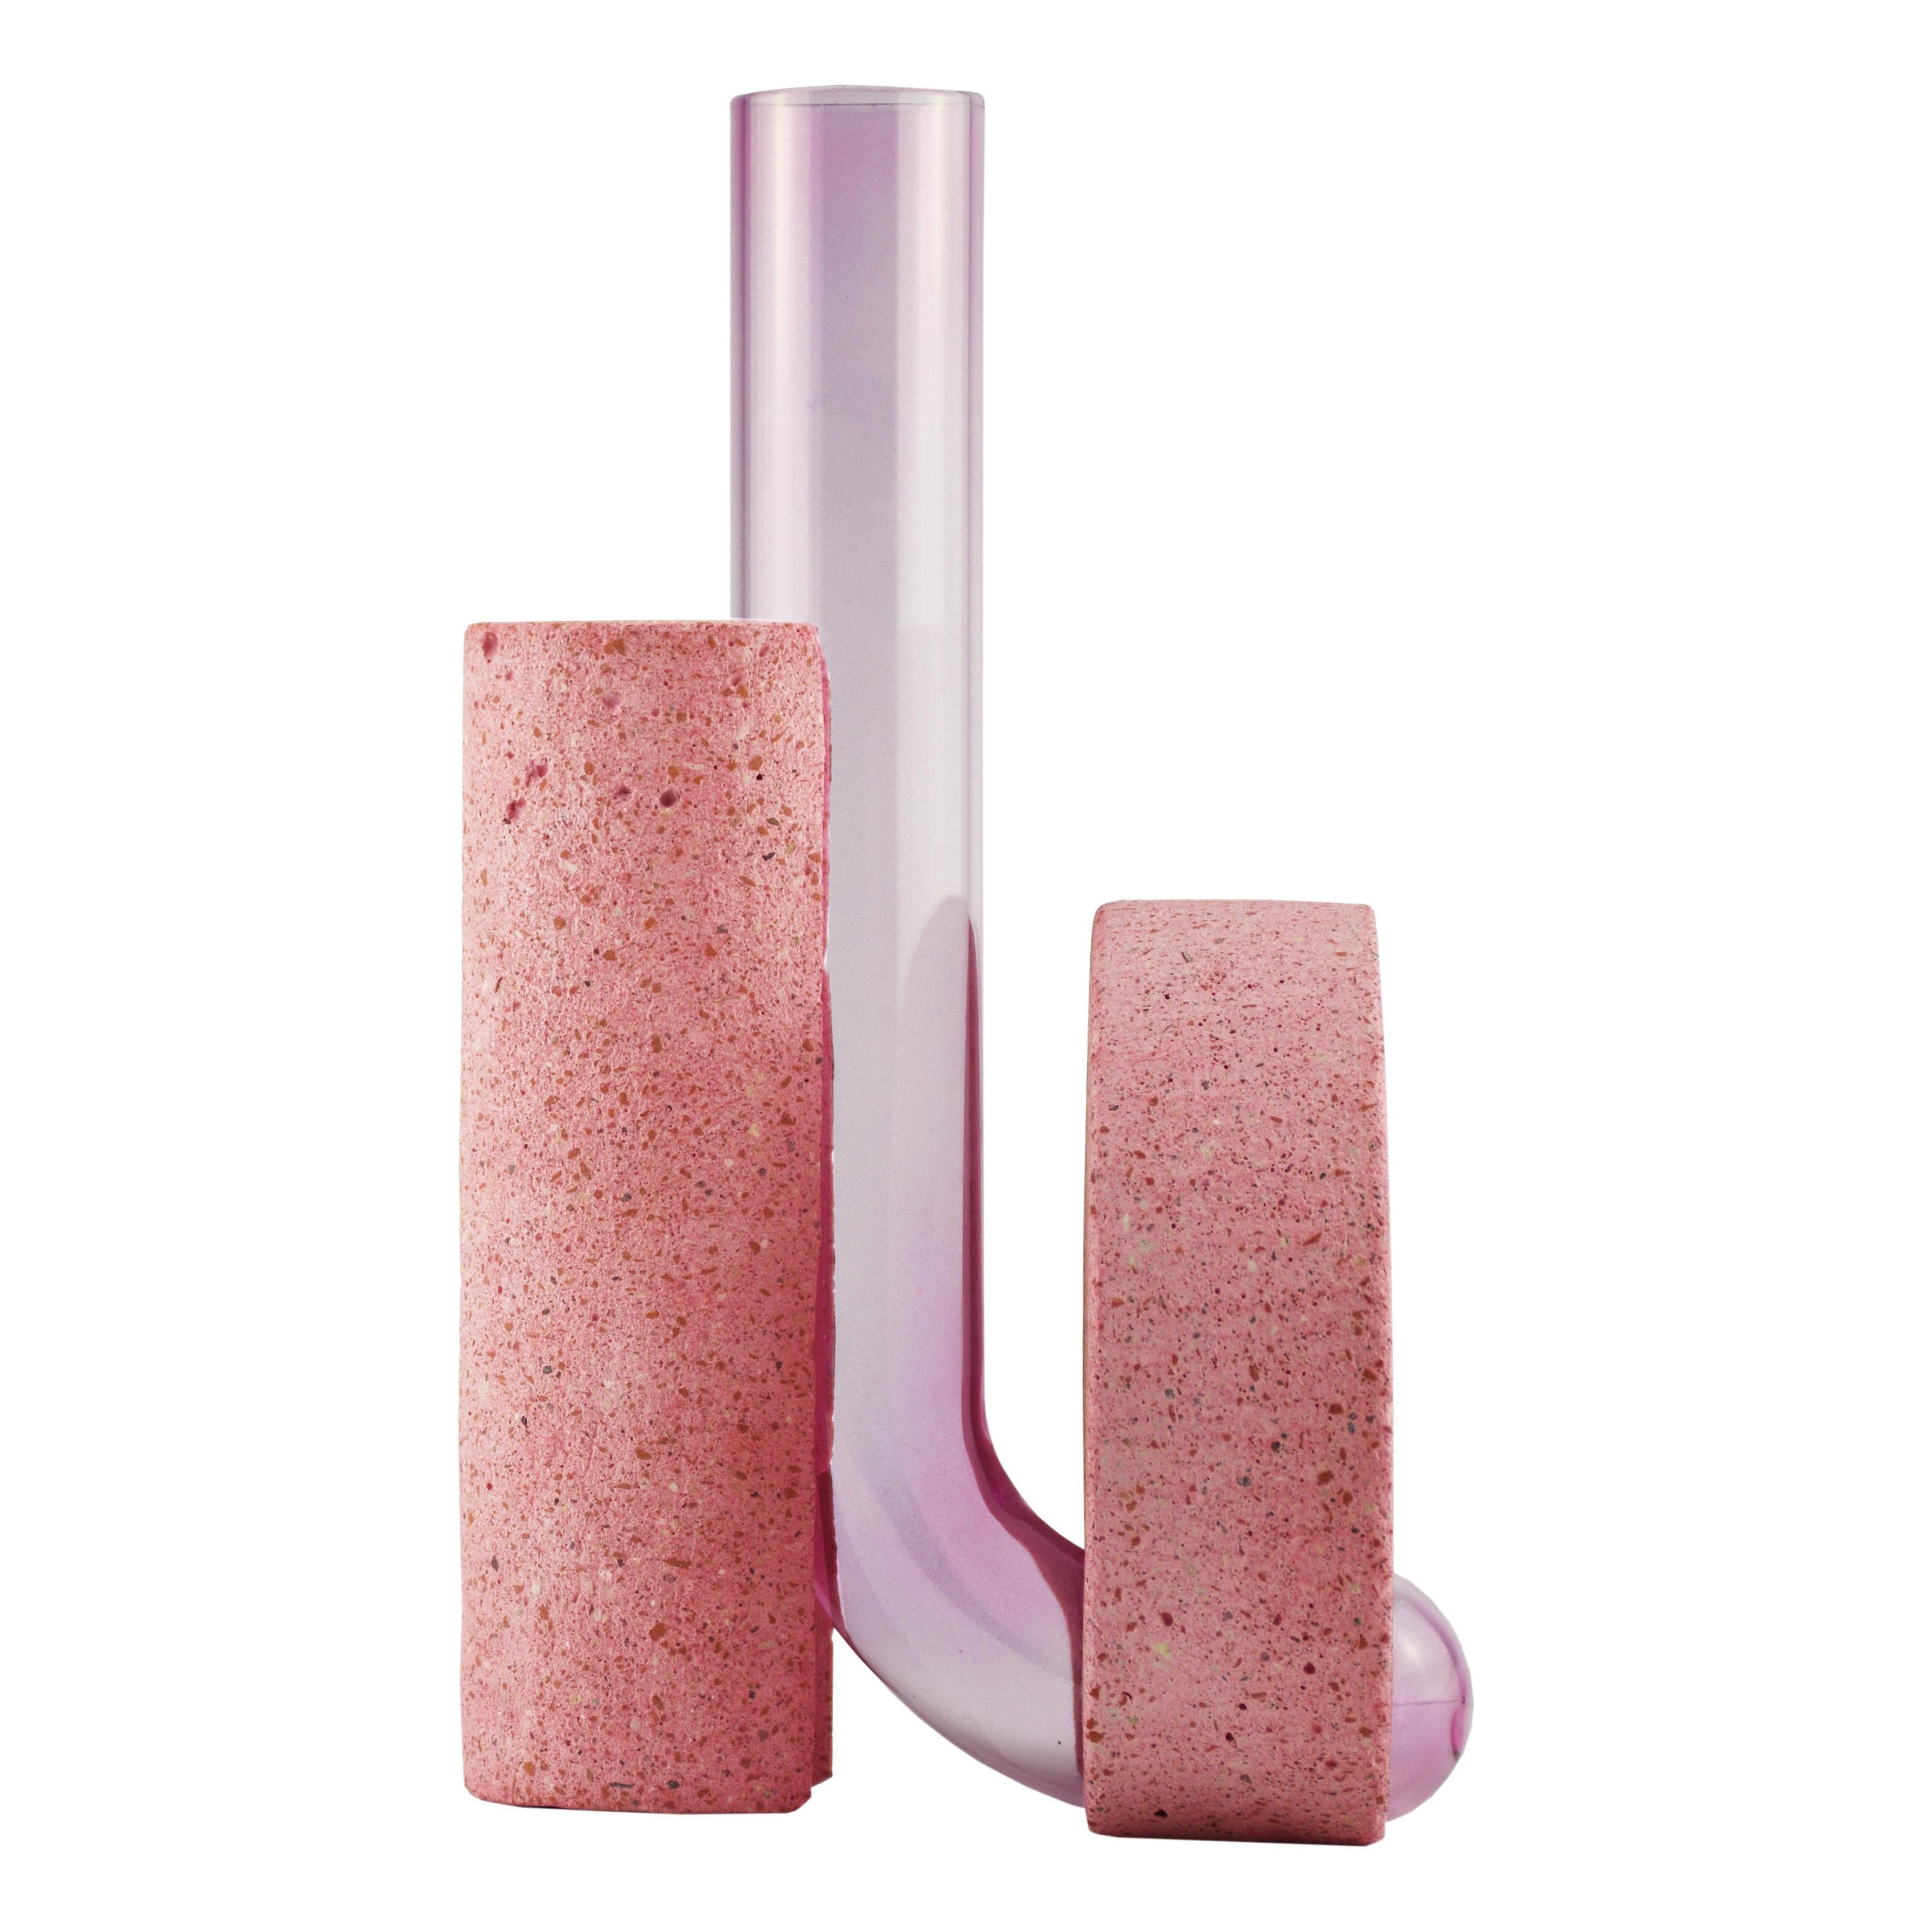 Vase en pierre rose et verre, design contemporain.
La collection de vases Cochleae s'inspire du cycle de vie des escargots et capture leur croissance lorsque le corps de l'invertébré (représenté par le verre incurvé) se développe vers le haut à